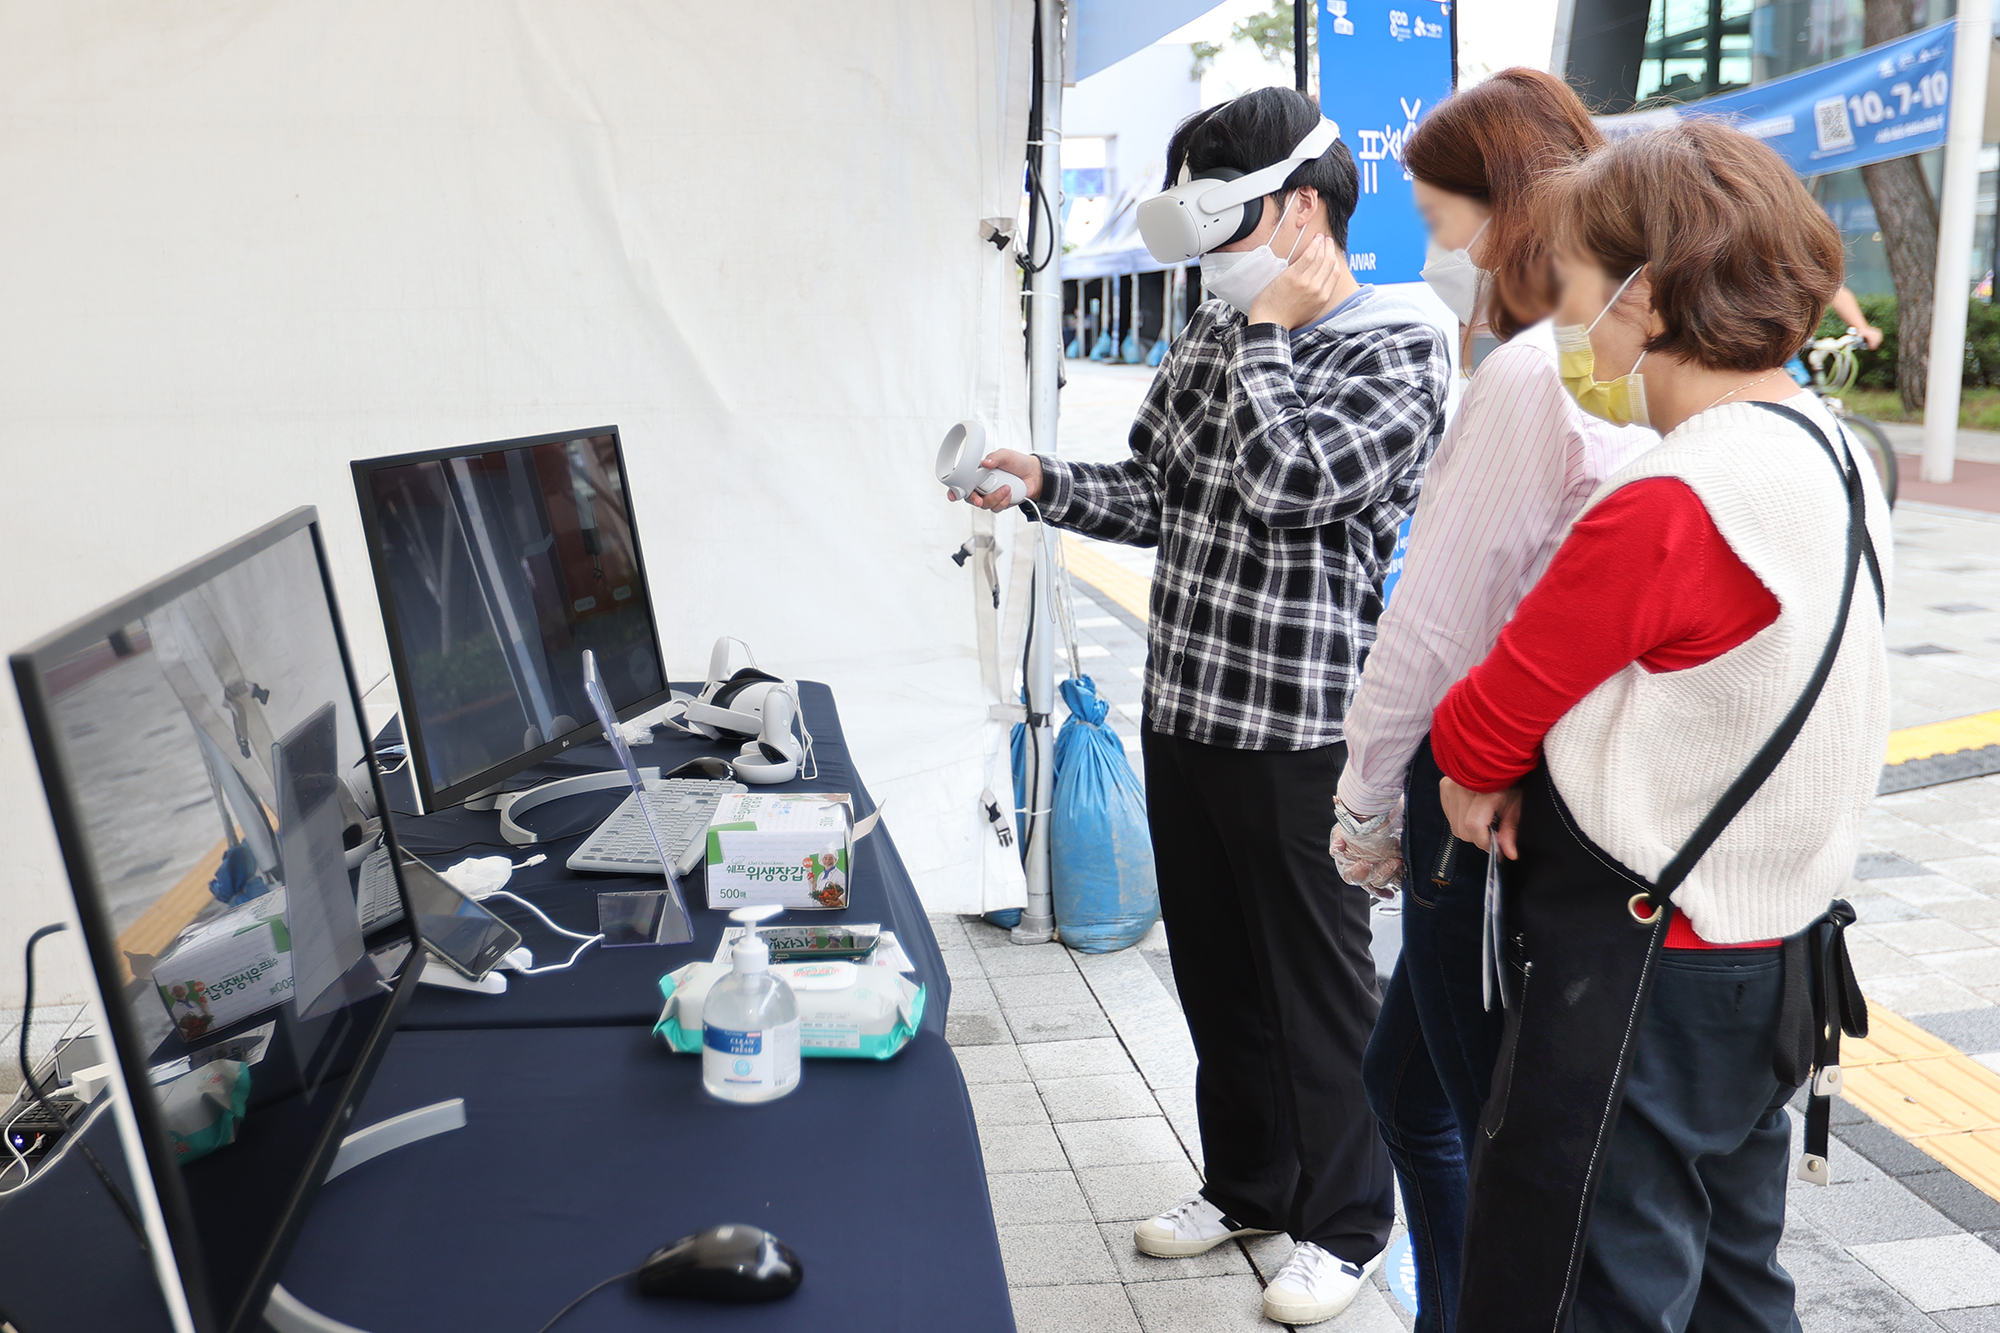 관람객들이 행사장에 마련된 부스에서 VR 체험을 해보고 있다.